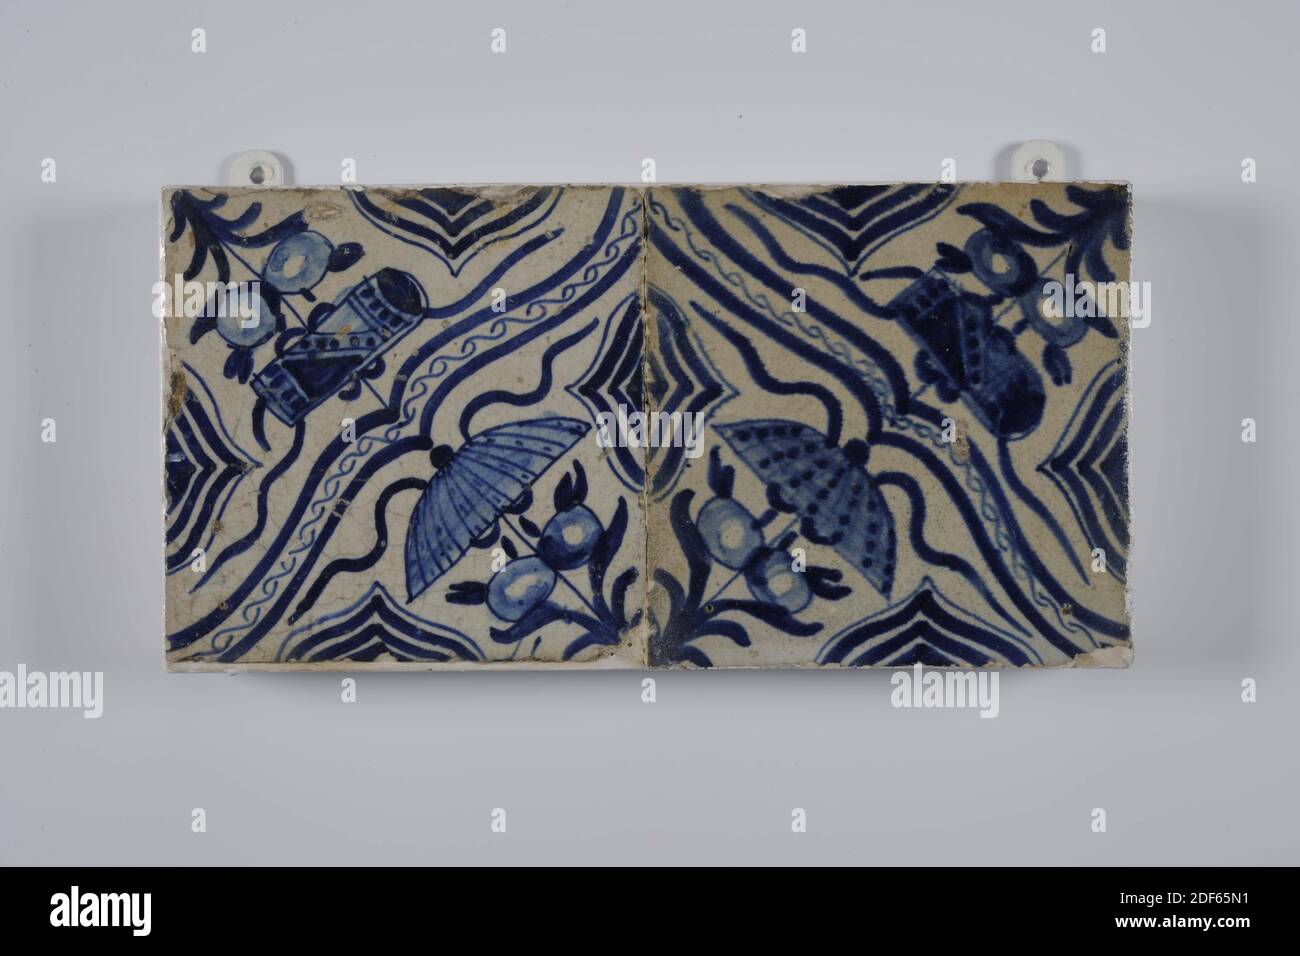 fliesenfeld, Anonymous, erste Hälfte 17. Jahrhundert, Zinn-Glasur, Steingut, mit Rahmen: 13.5 x 26.6 x 3,4 cm (135 x 266 x 34mm), Fliesen: 13.2 x 13.2 x 1,4cm (132 x 132 x 14mm), nordniederland, Fliesenfeld aus zwei Fliesen (eins nach dem anderen) aus Steingut mit Zinn Glasur in blau lackiert bedeckt. Auf dem Fliesenfeld ist ein Chinoiserie-Dekor in einer Diagonale von zwei chinesischen Glückzeichen, einem Sonnenschirm und einer Schreibrolle dargestellt, die durch eine Klammer getrennt sind. Die Fliesen haben als Randmotiv einen halb gefrästen, ineinandergreifenden Ring, 1985 Stockfoto